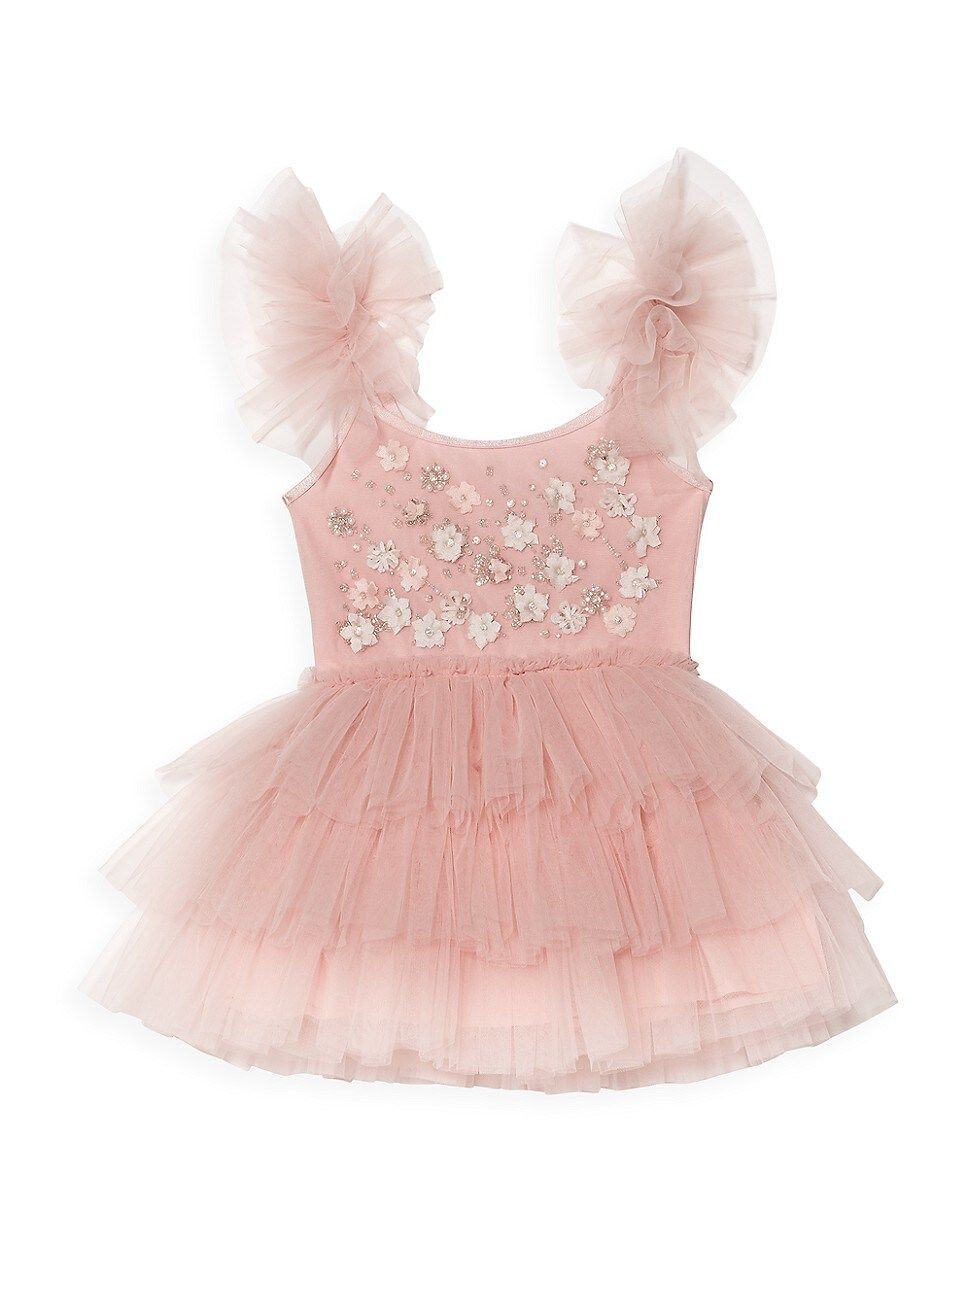 Baby Girl's Enchanted Botanique Luella Tutu Dress - Rose Quartz - Size 3 Months | Saks Fifth Avenue